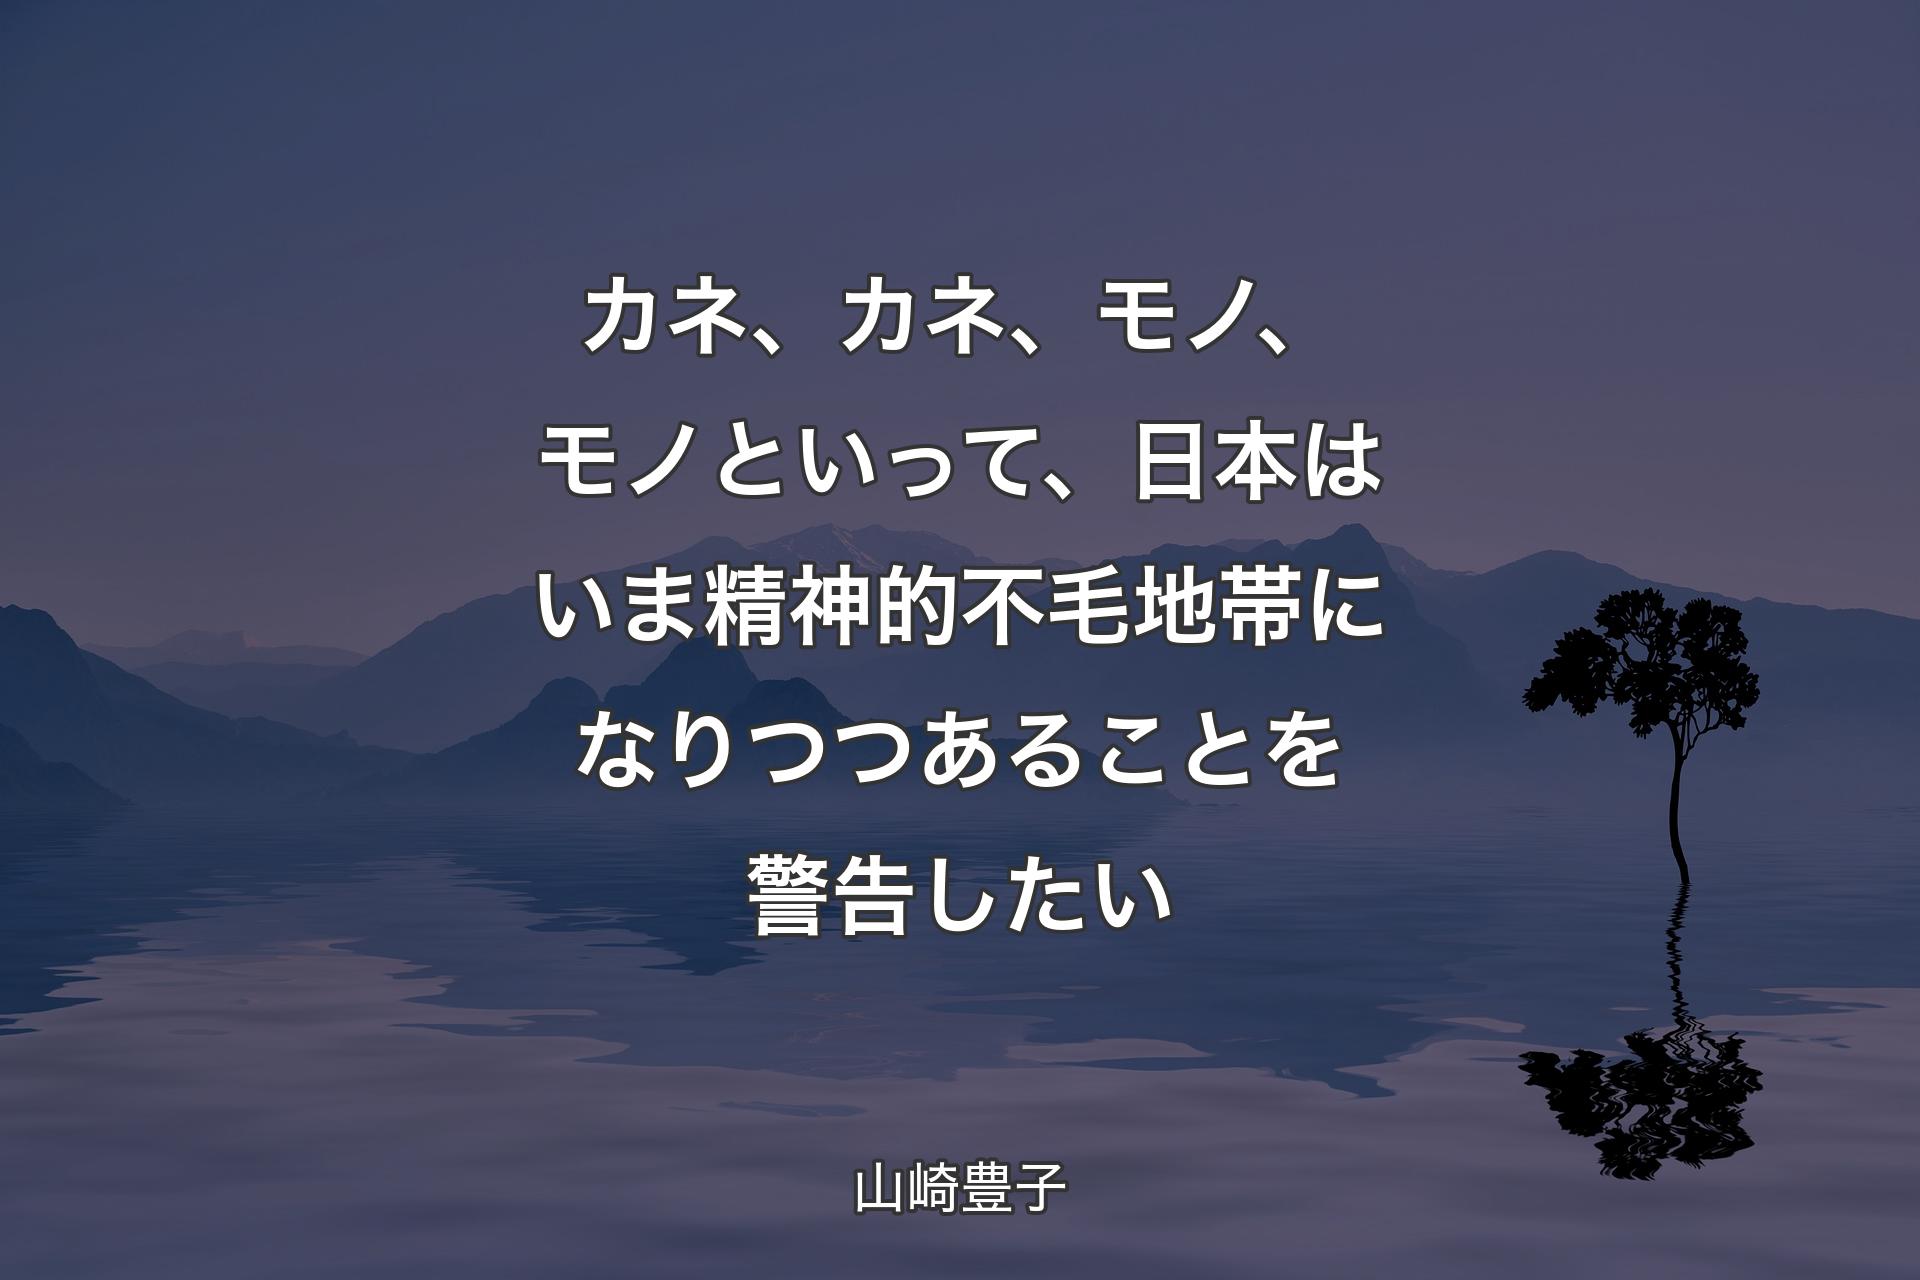 【背景4】カネ、カネ、モノ、モノといって、日本はいま精神的不毛地帯になりつつあることを警告したい - 山崎豊子